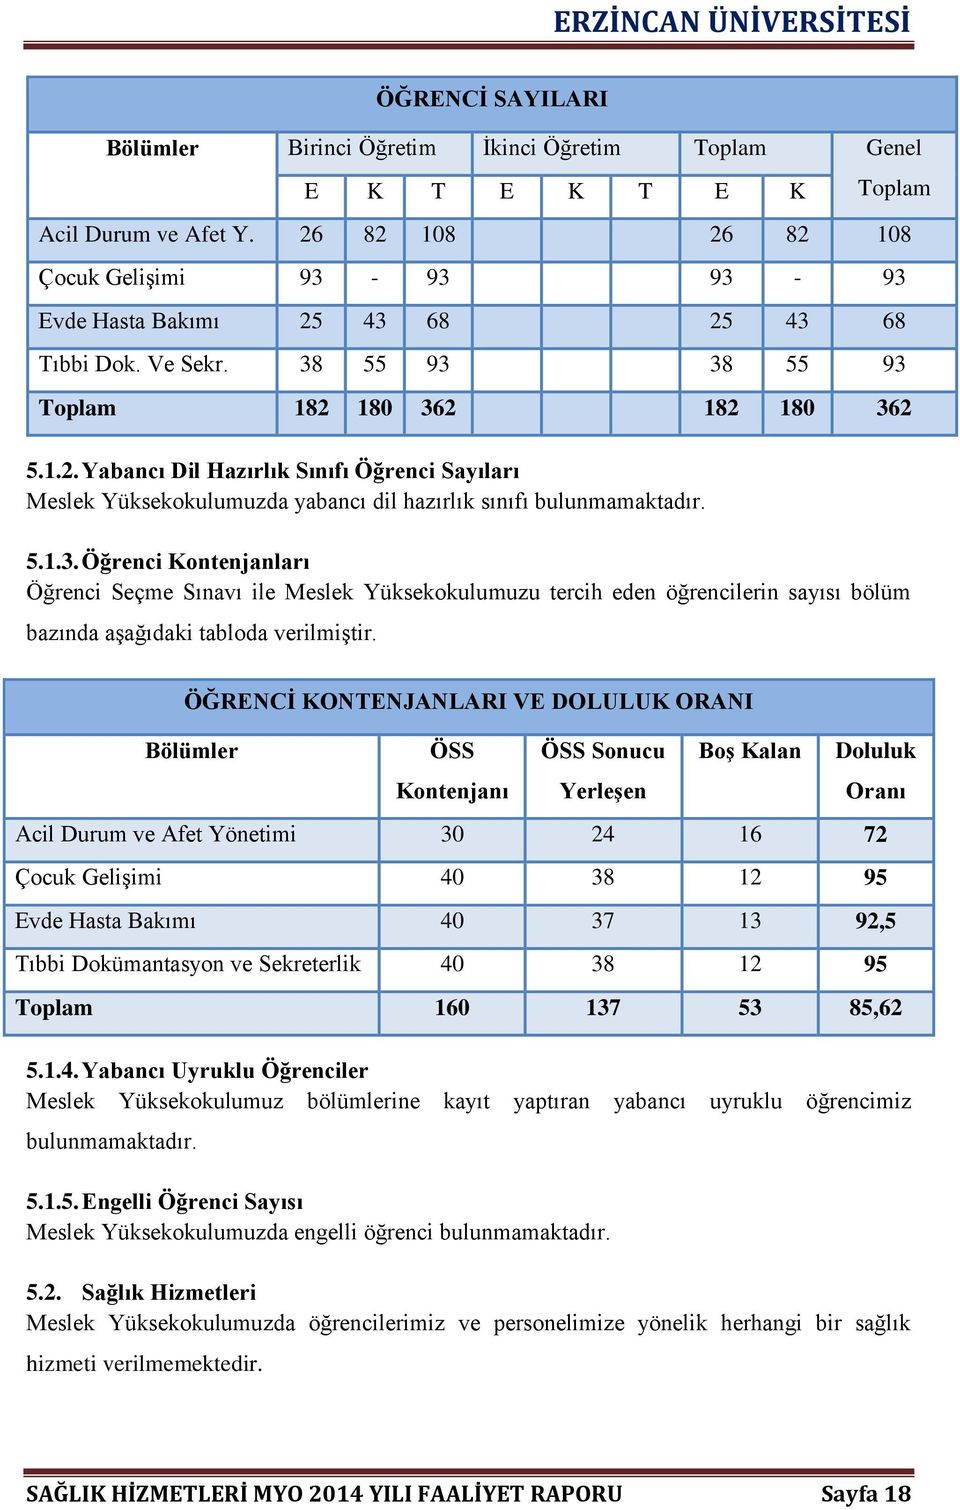 5.1.3. Öğrenci Kontenjanları Öğrenci Seçme Sınavı ile Meslek Yüksekokulumuzu tercih eden öğrencilerin sayısı bölüm bazında aşağıdaki tabloda verilmiştir.